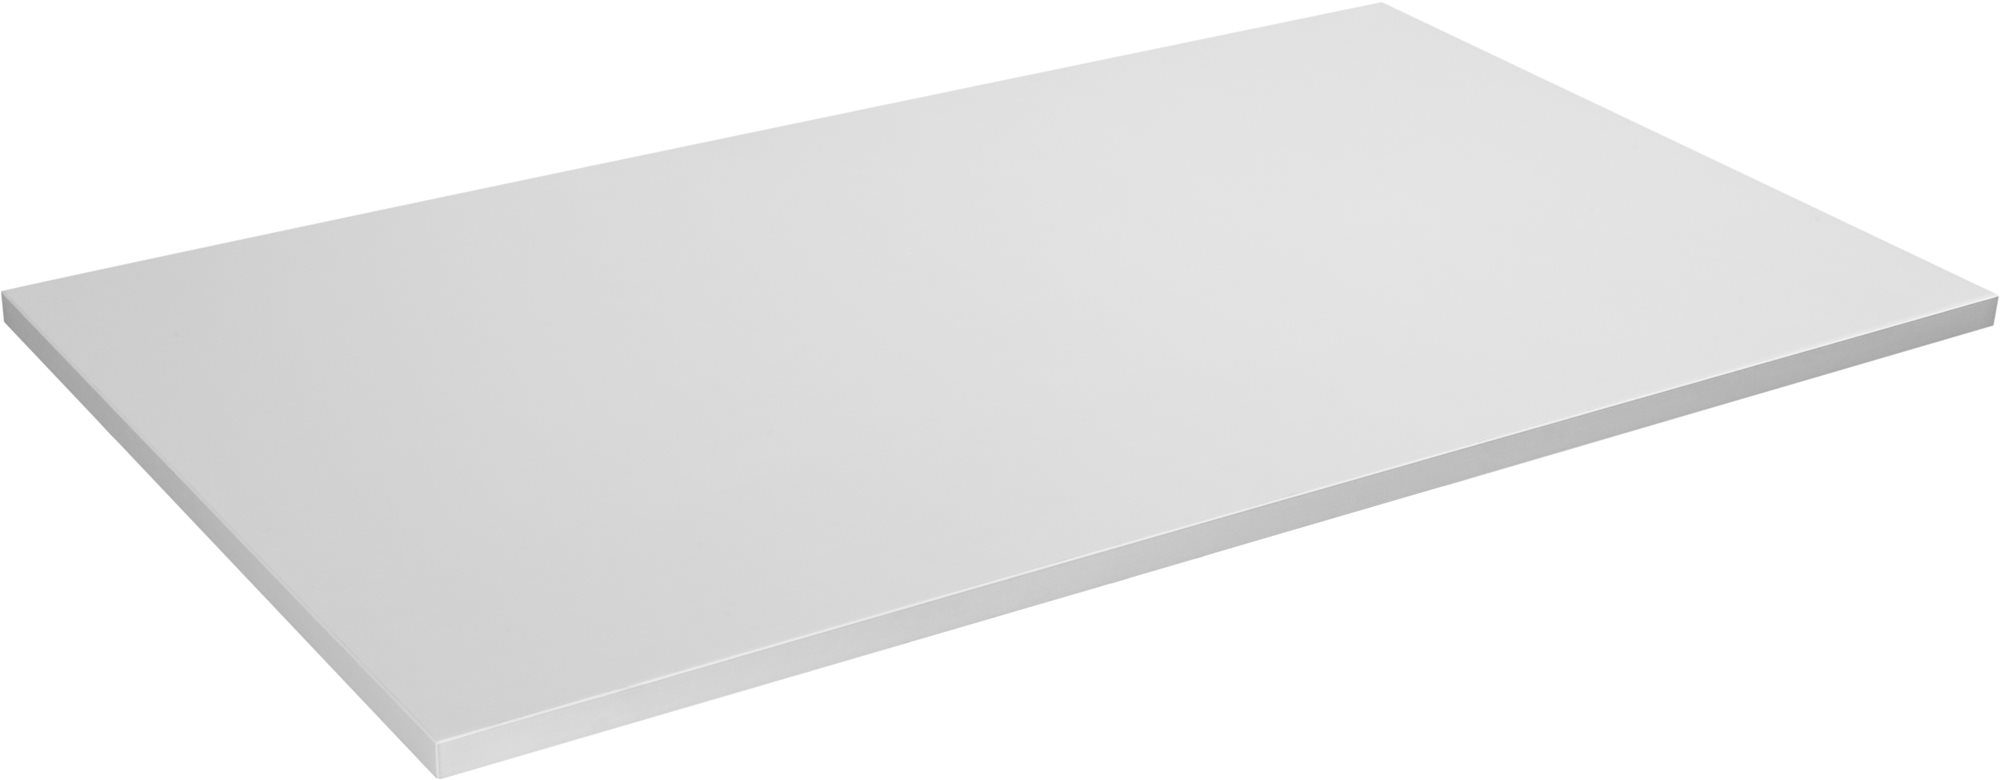 Asztallap AlzaErgo TTE-12 120x80cm fehér laminált